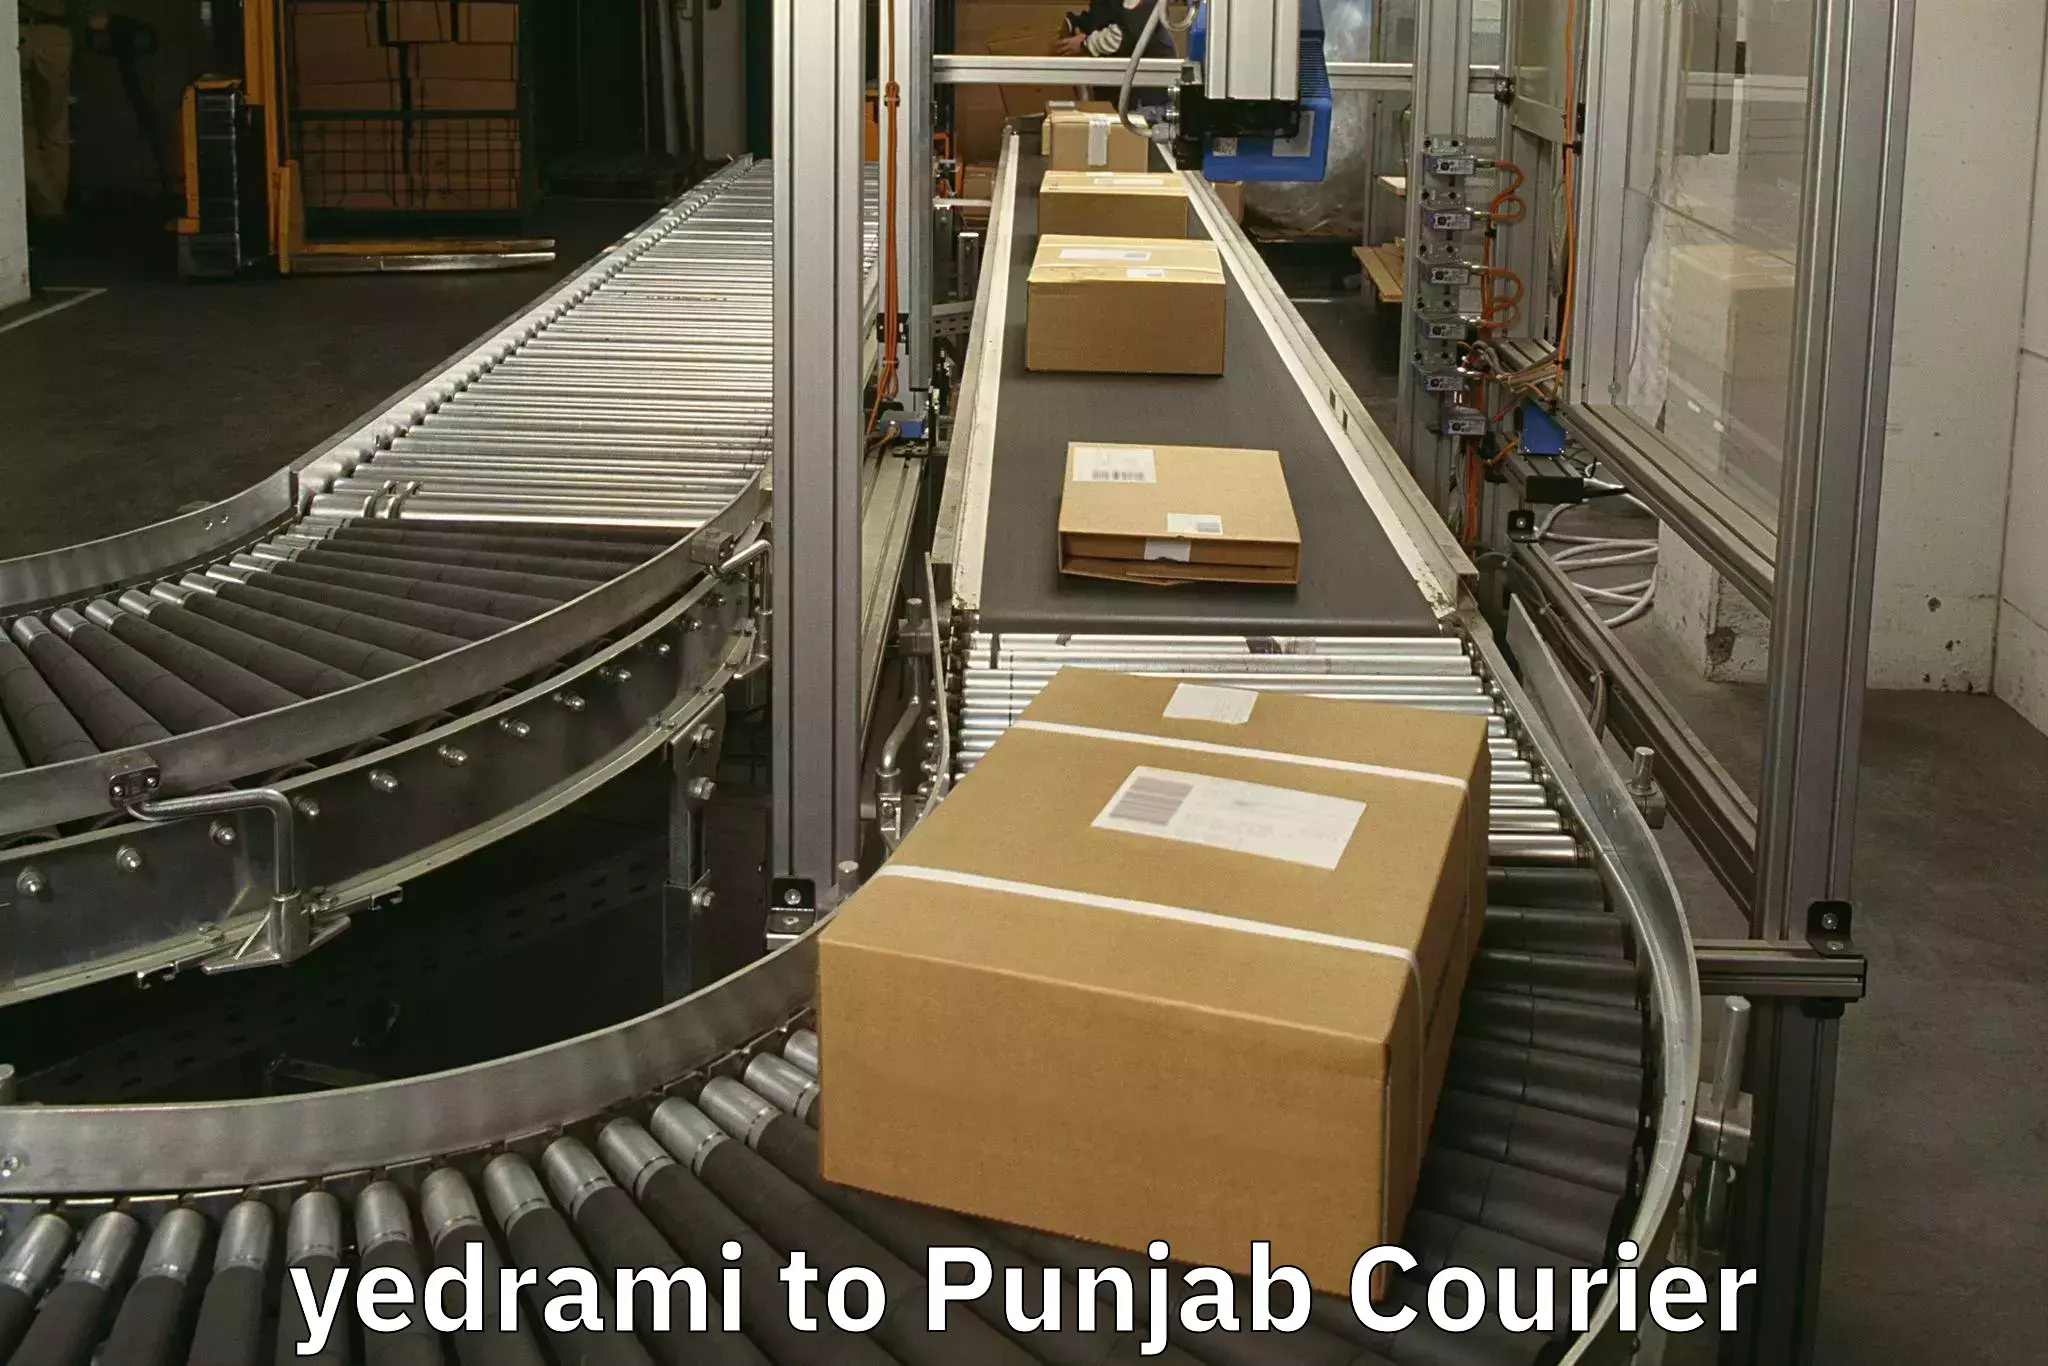 Simplified luggage transport yedrami to Punjab